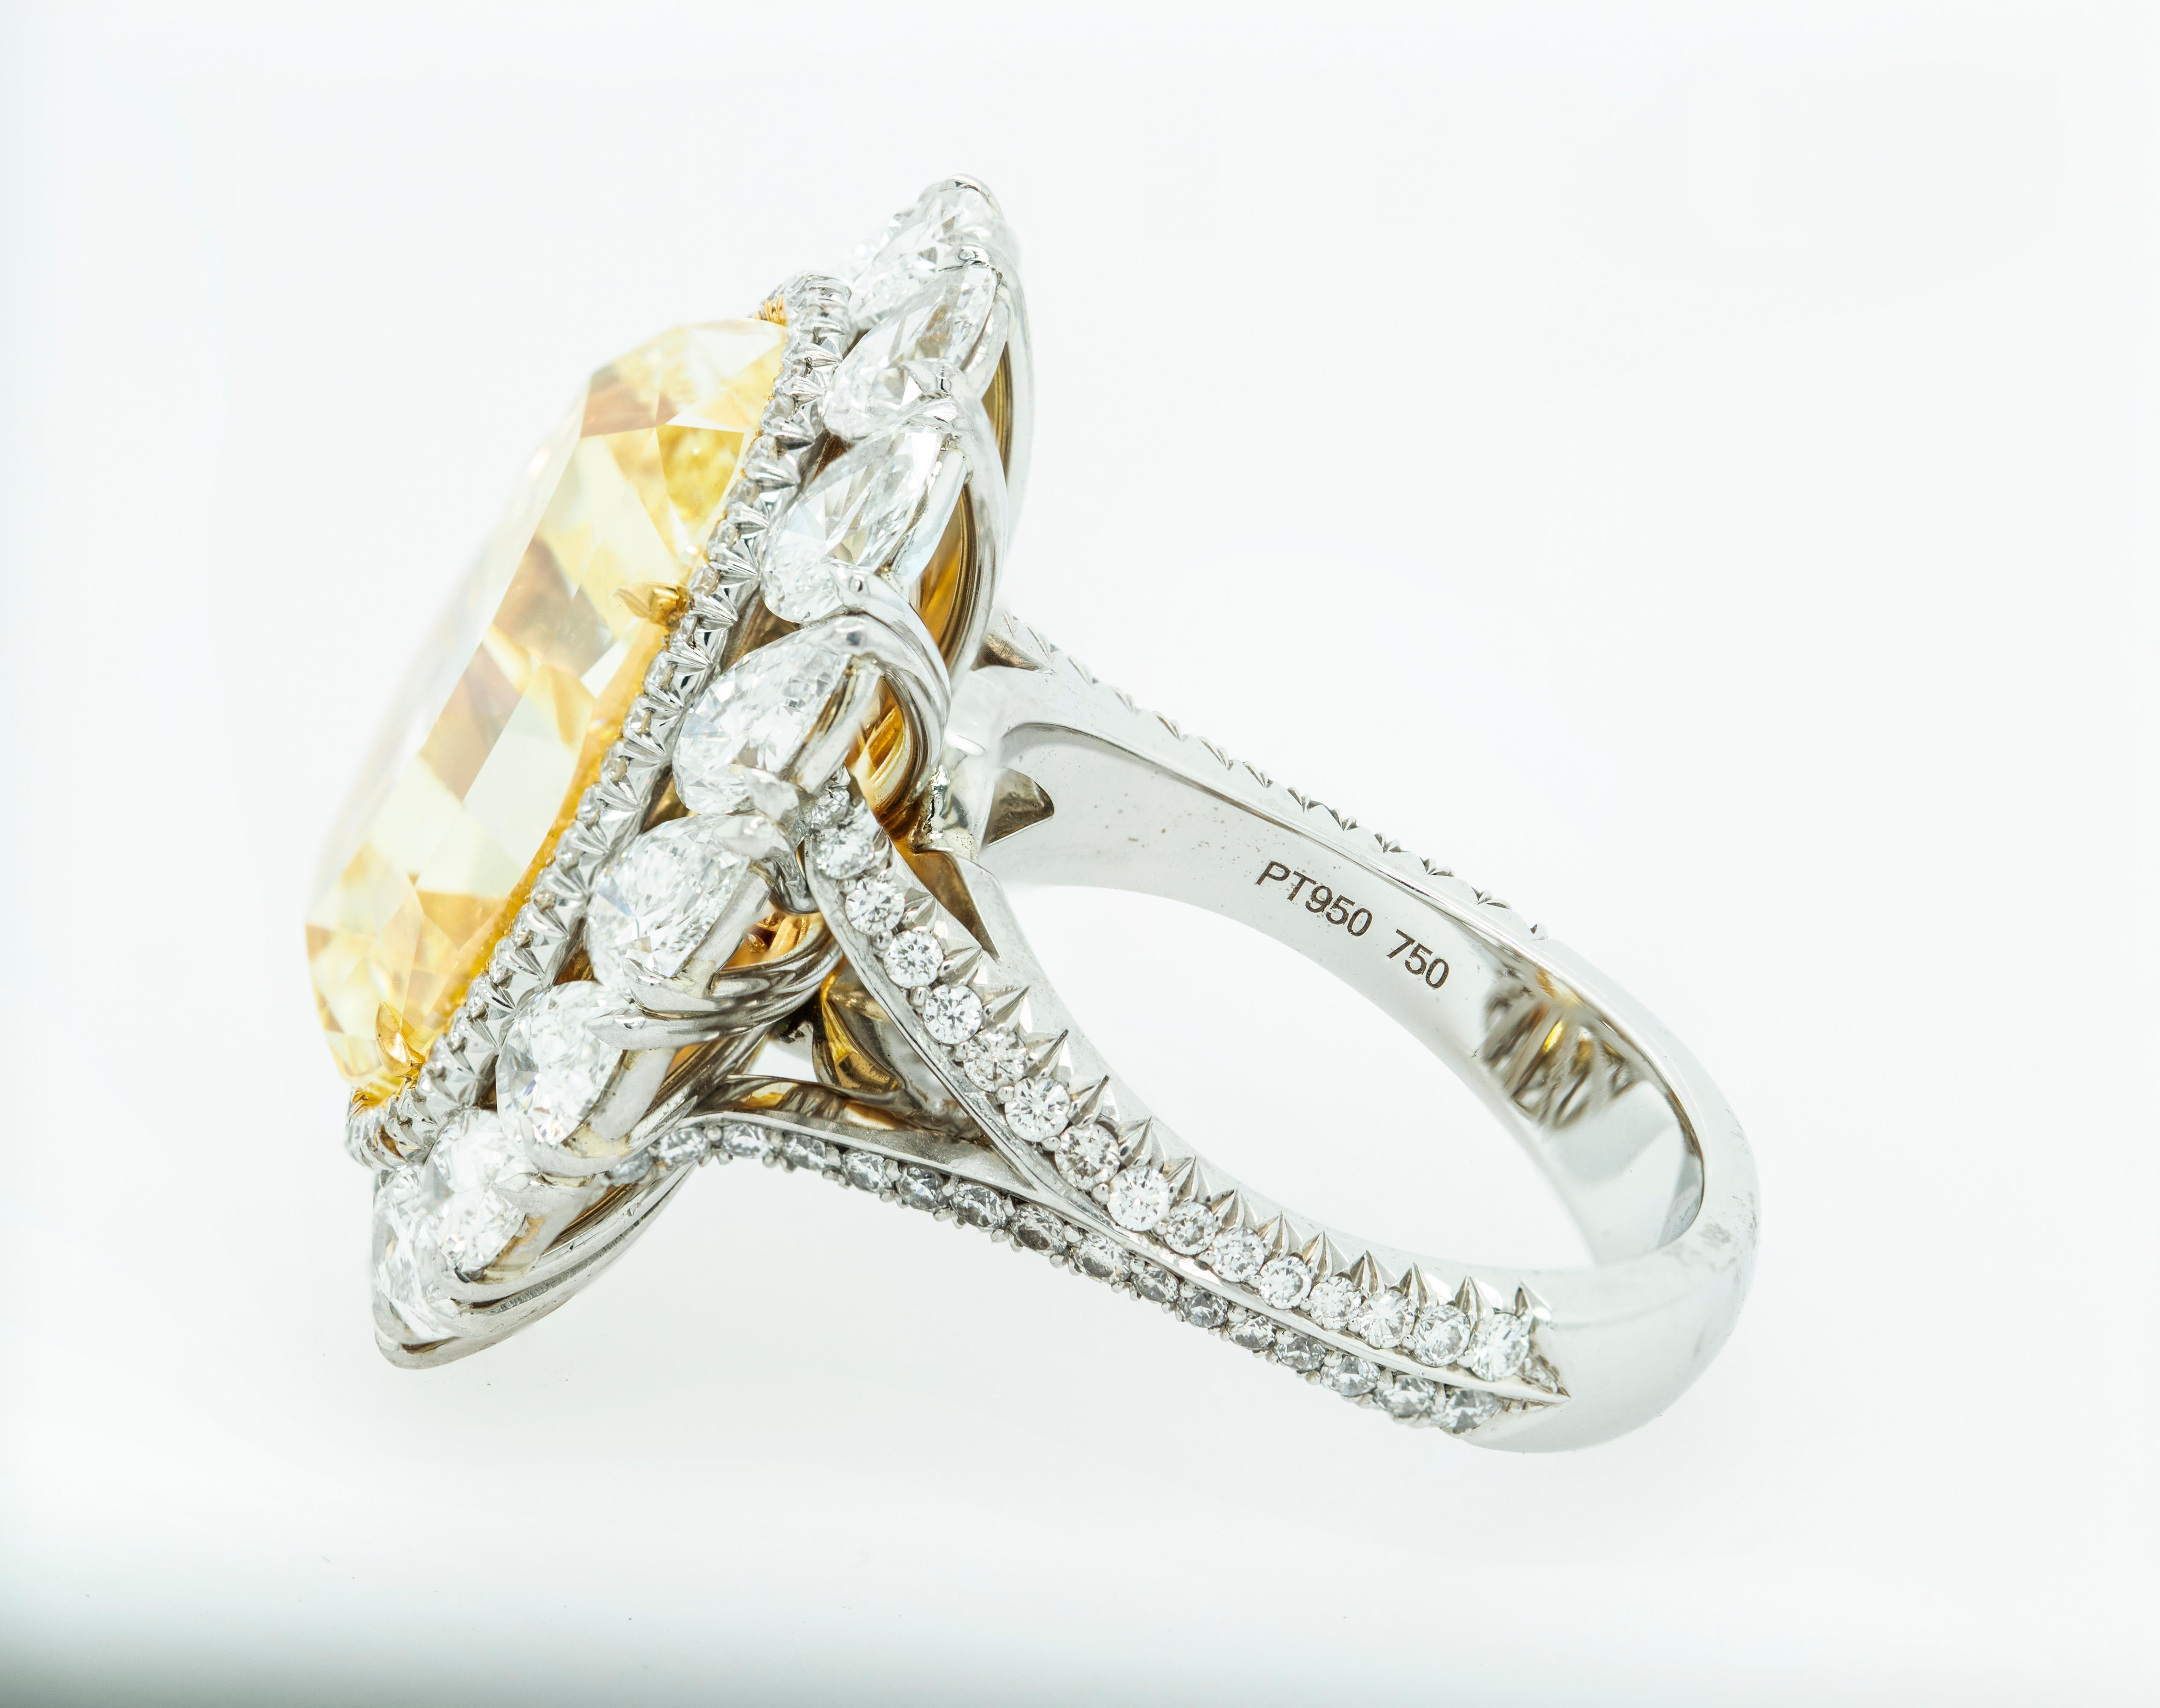 16 carat engagement ring